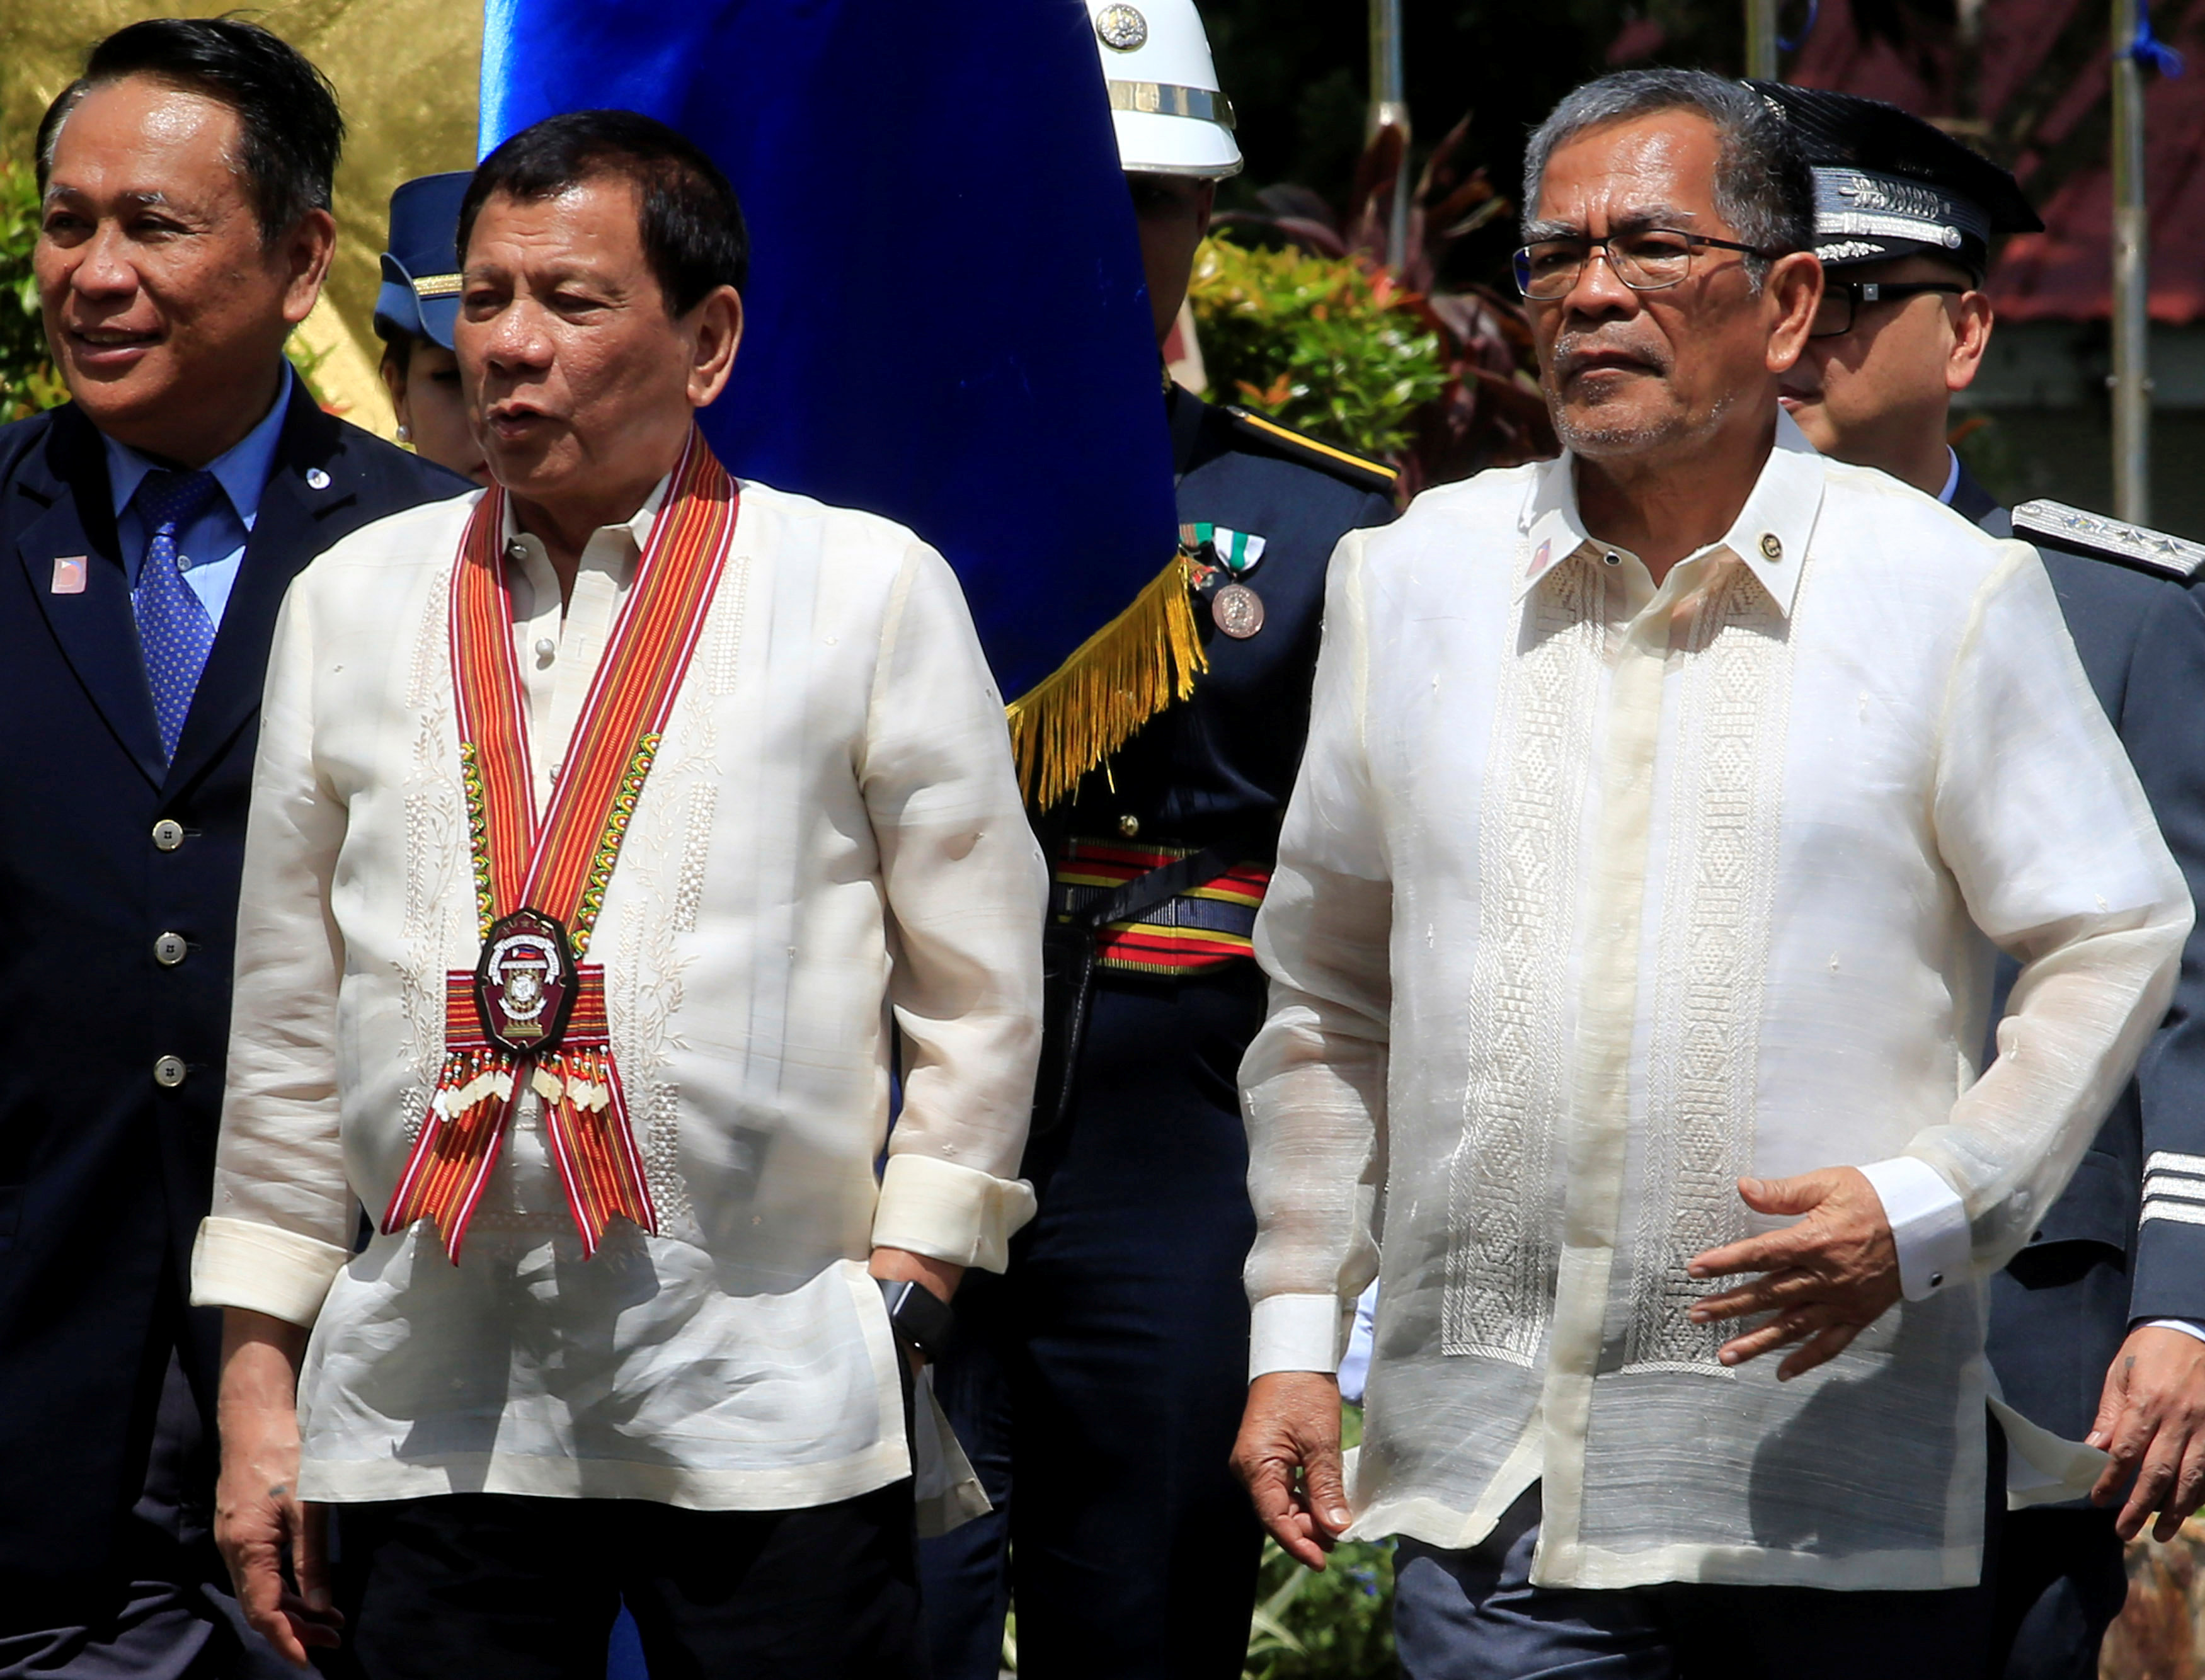 Duterte's trust ratings fall slightly